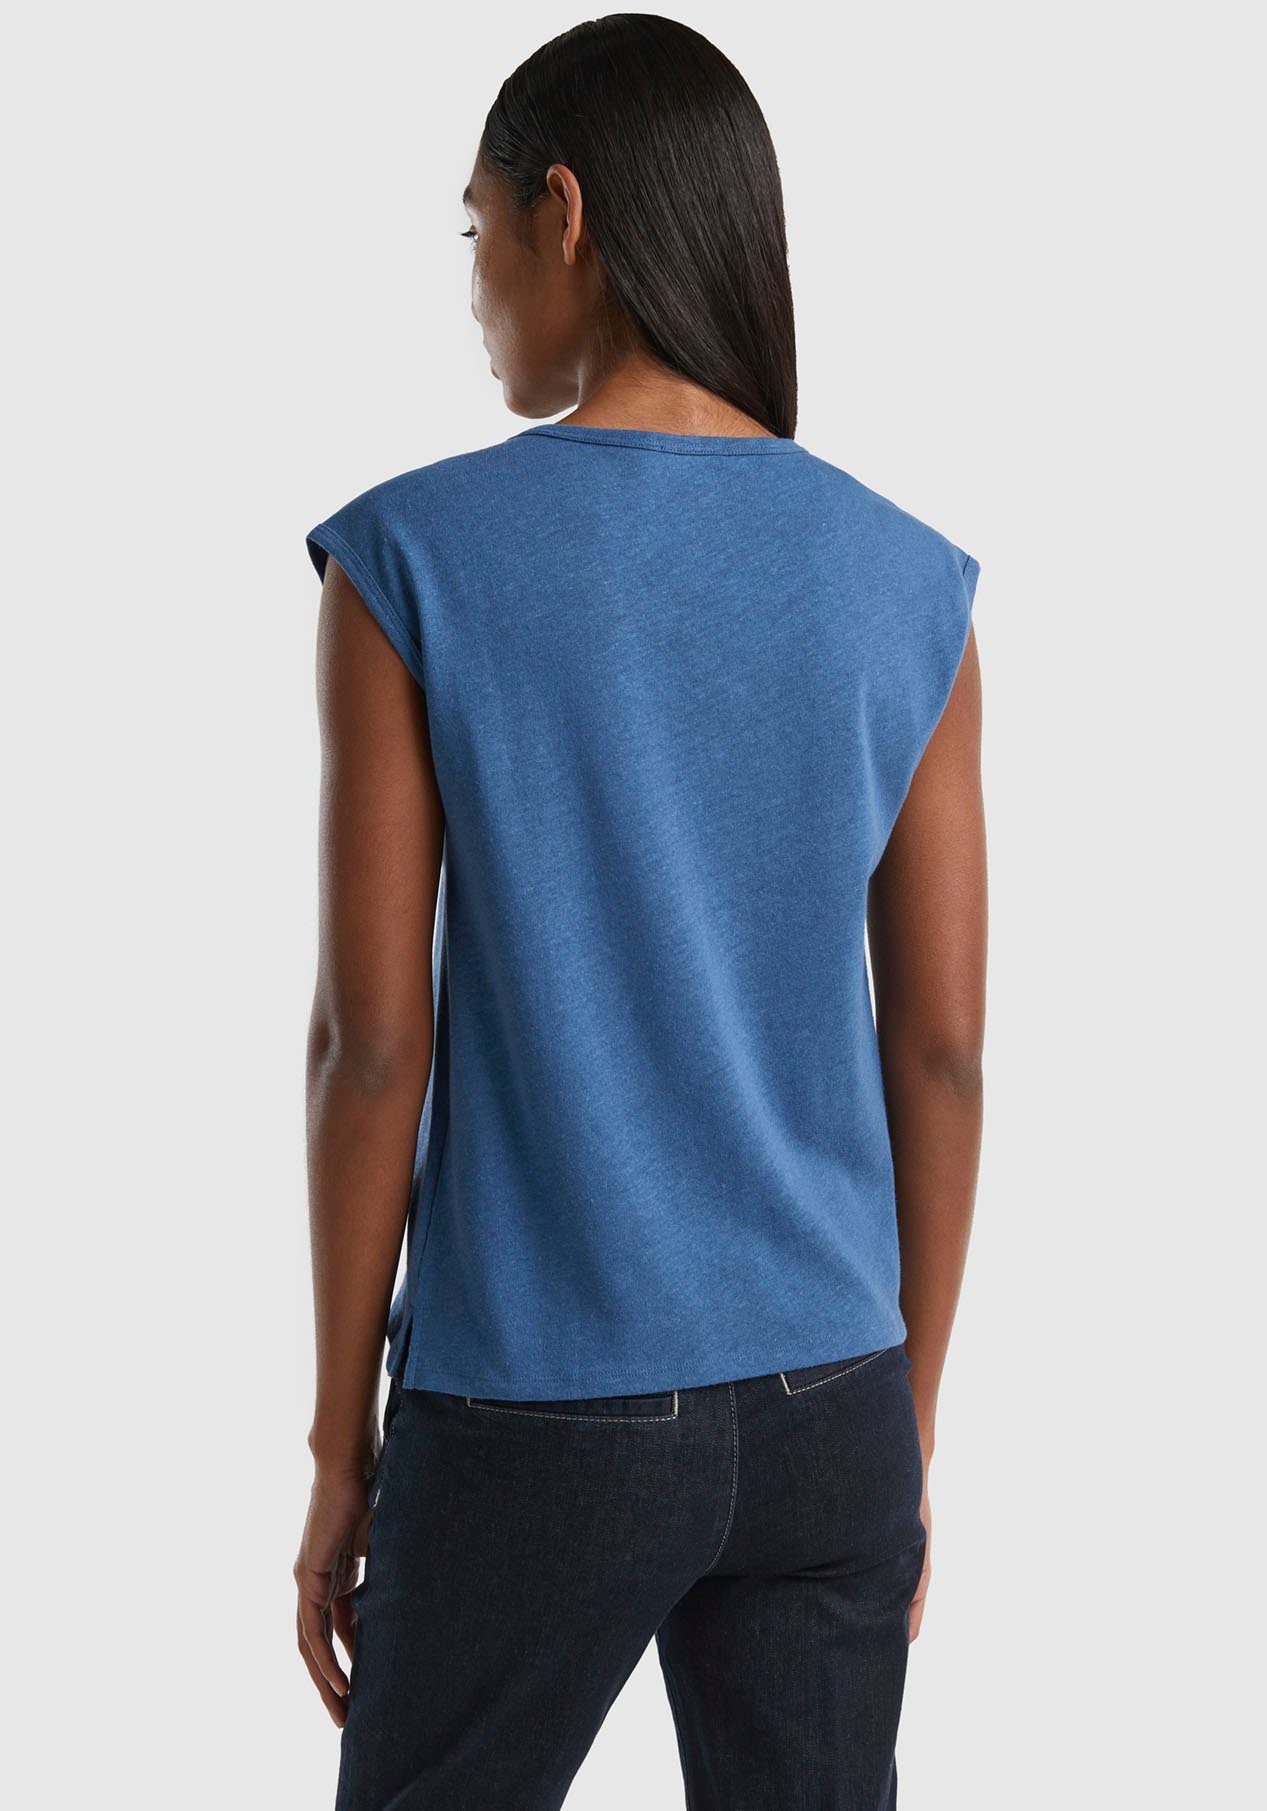 United Colors of Benetton T-Shirt Rundhalsausschnitt blau mit